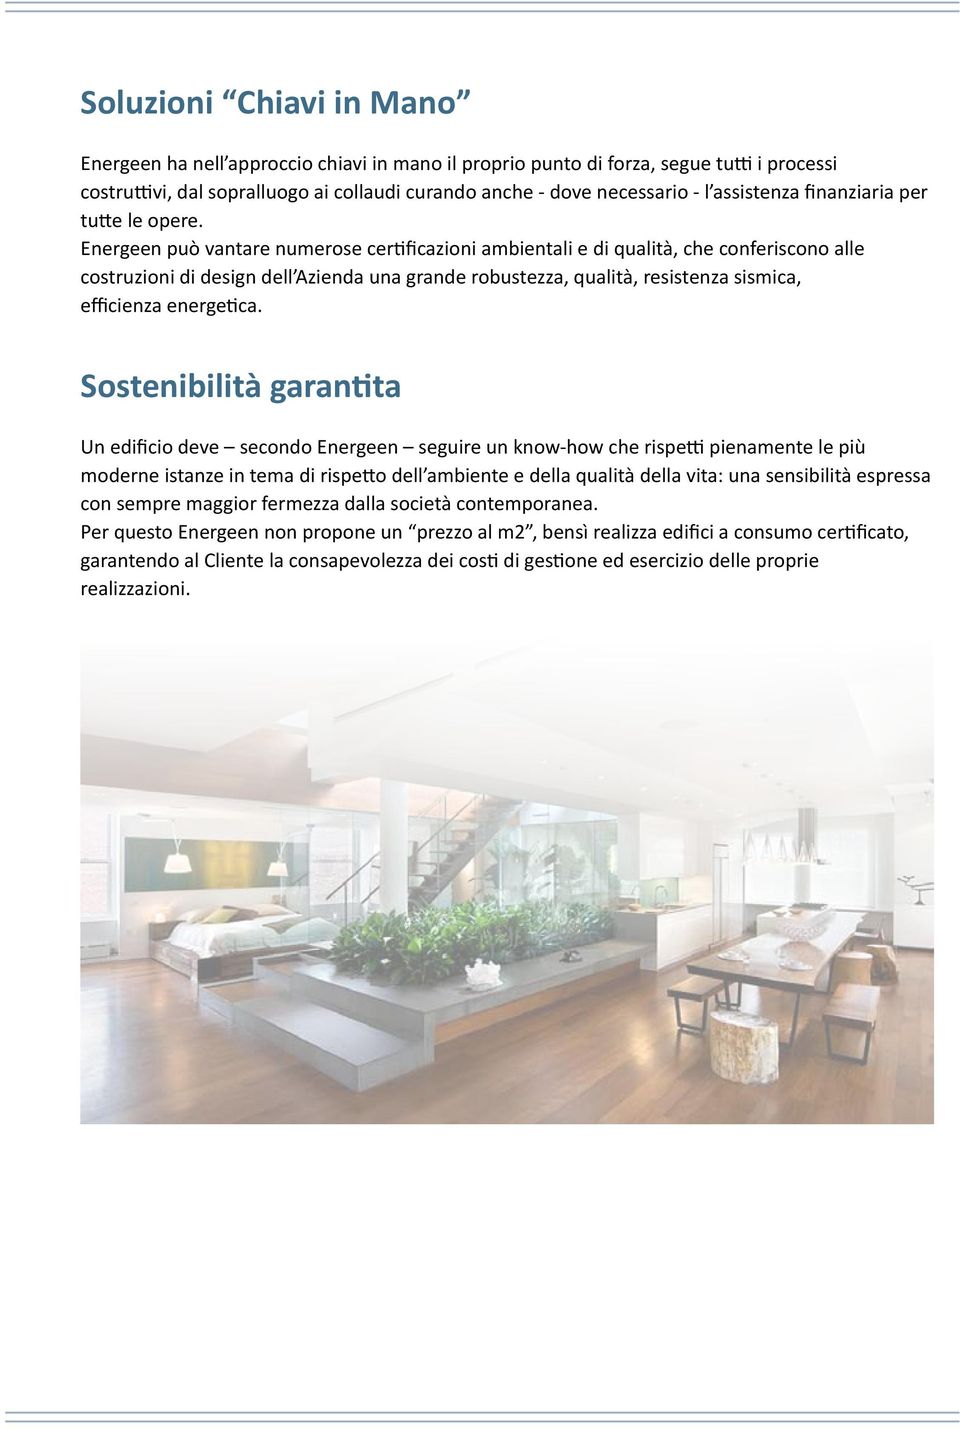 Energeen può vantare numerose certificazioni ambientali e di qualità, che conferiscono alle costruzioni di design dell Azienda una grande robustezza, qualità, resistenza sismica, efficienza